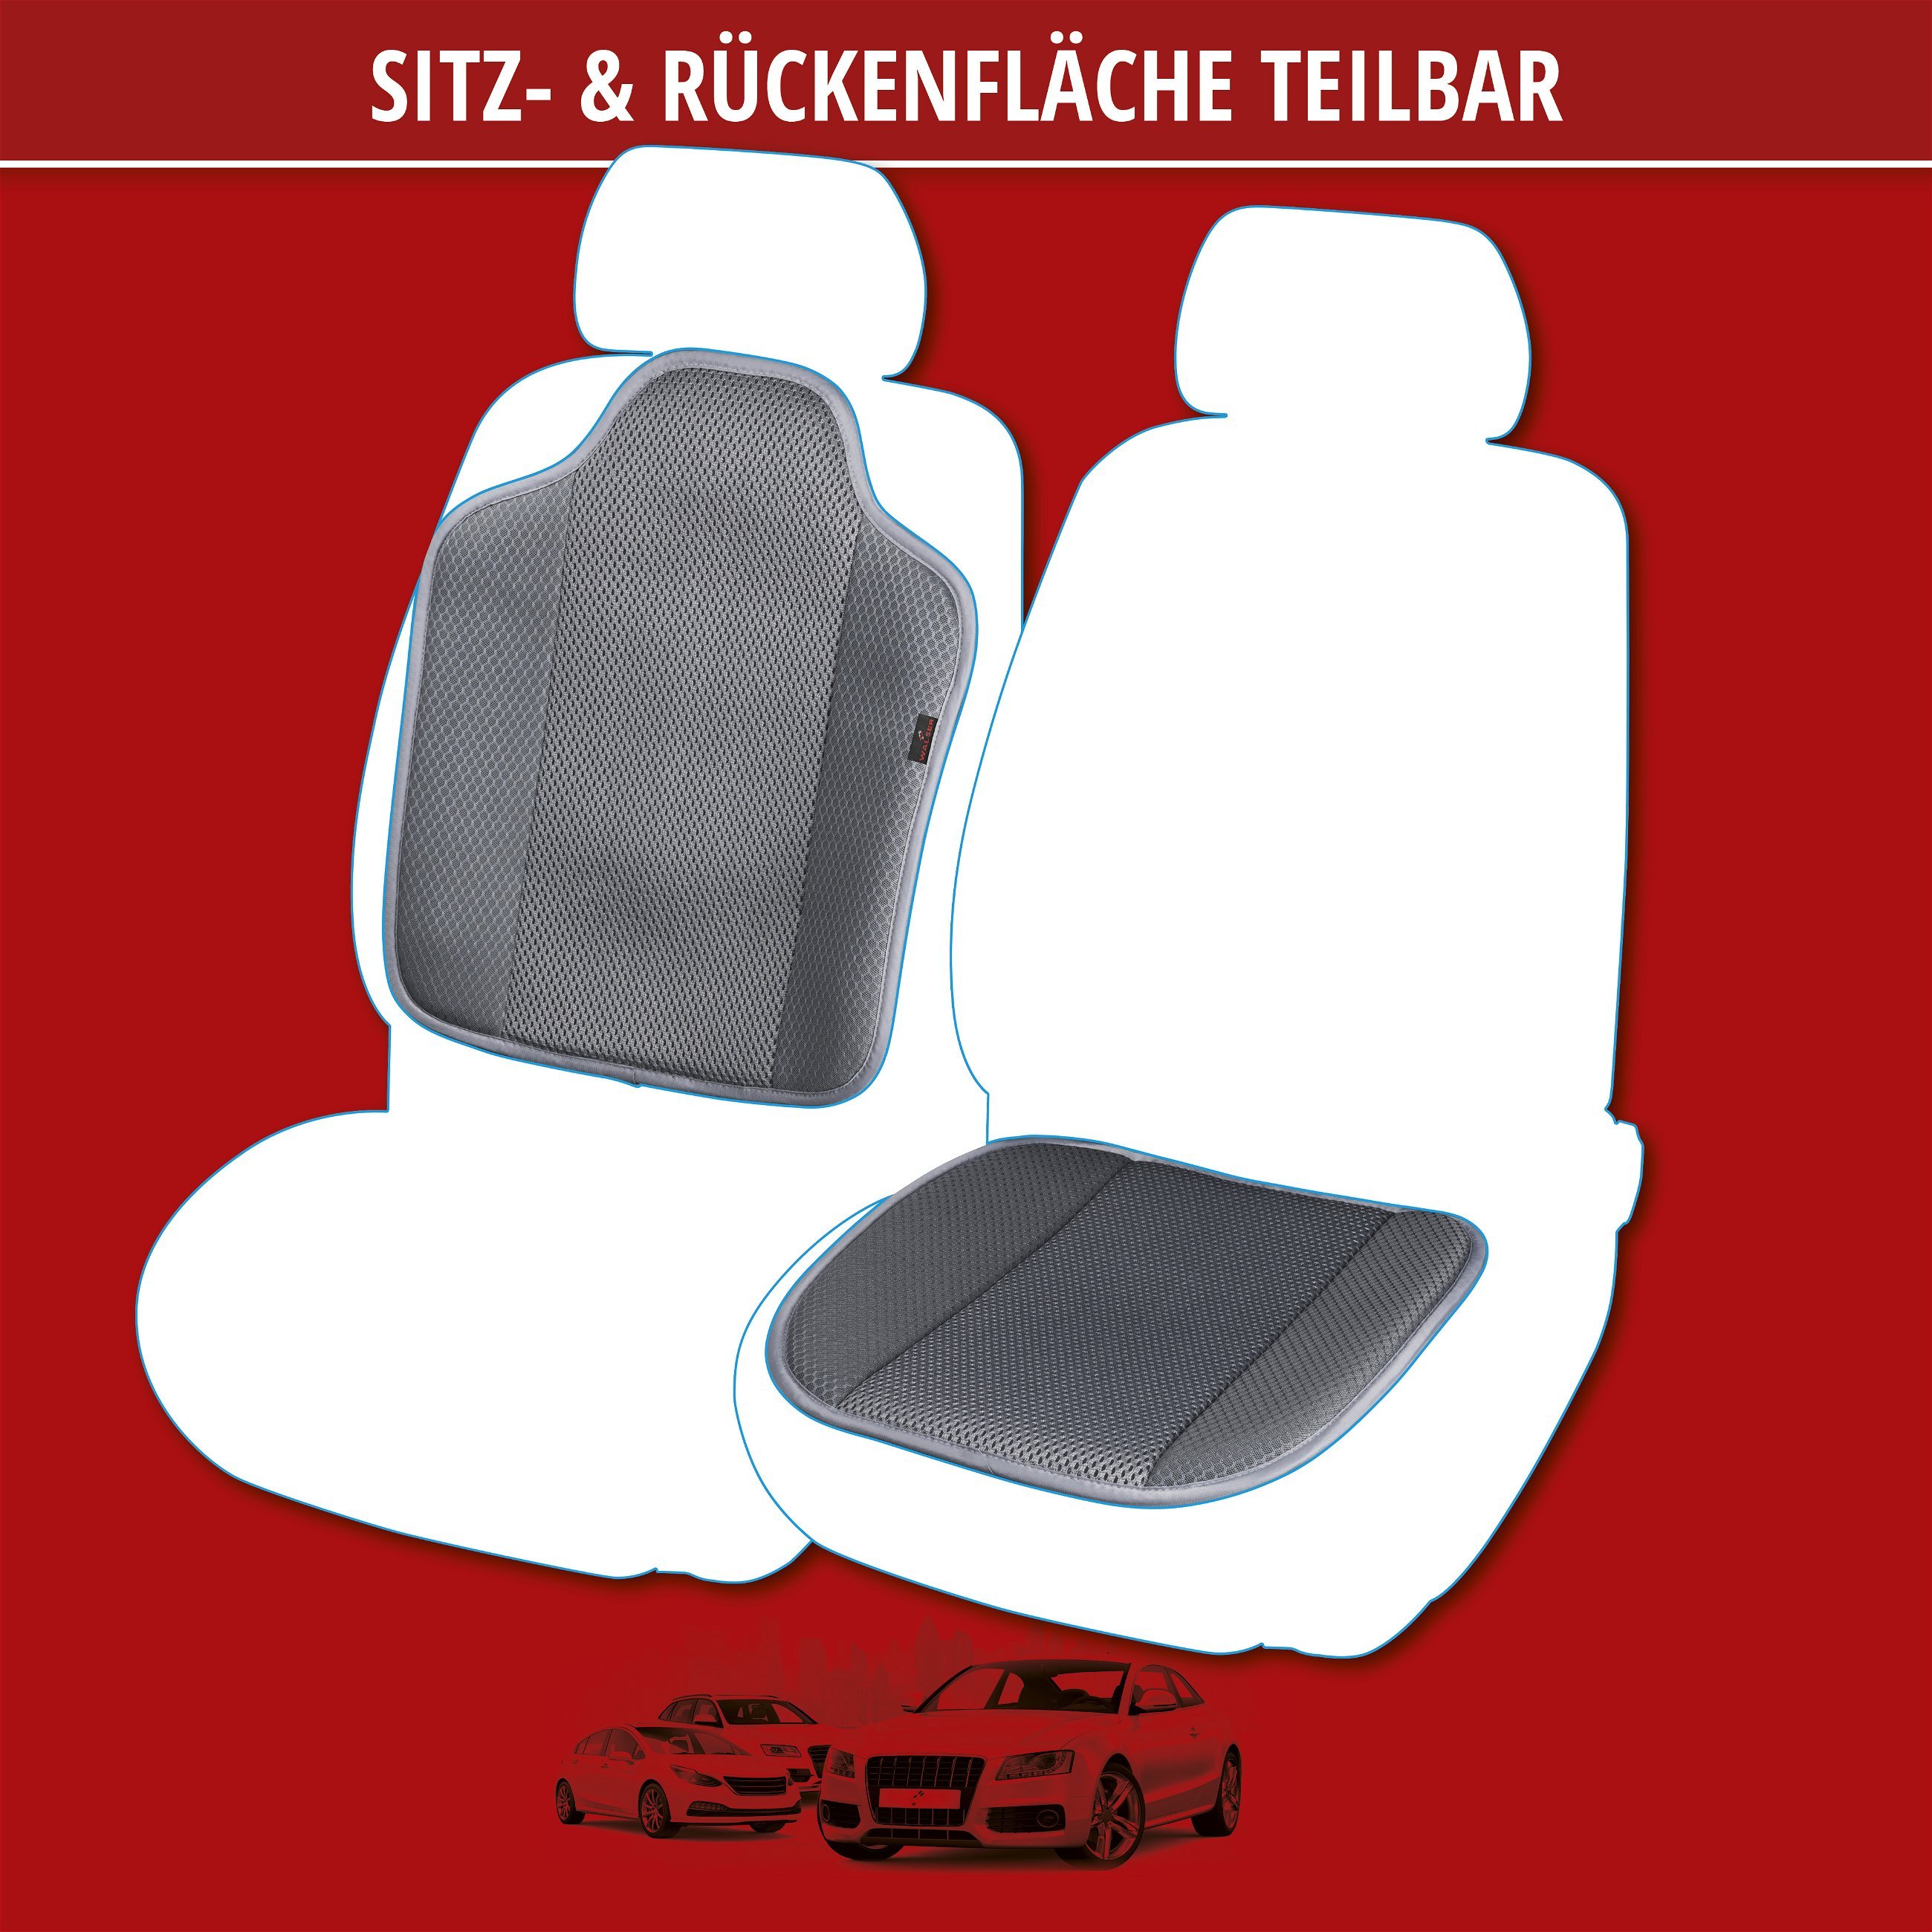 PKW Sitzauflage Aero-Spacer, Auto-Sitzaufleger schwarz, Sitzauflagen, Sitzbezüge und Sitzauflagen für PKWs, Autositzbezüge & Auflagen